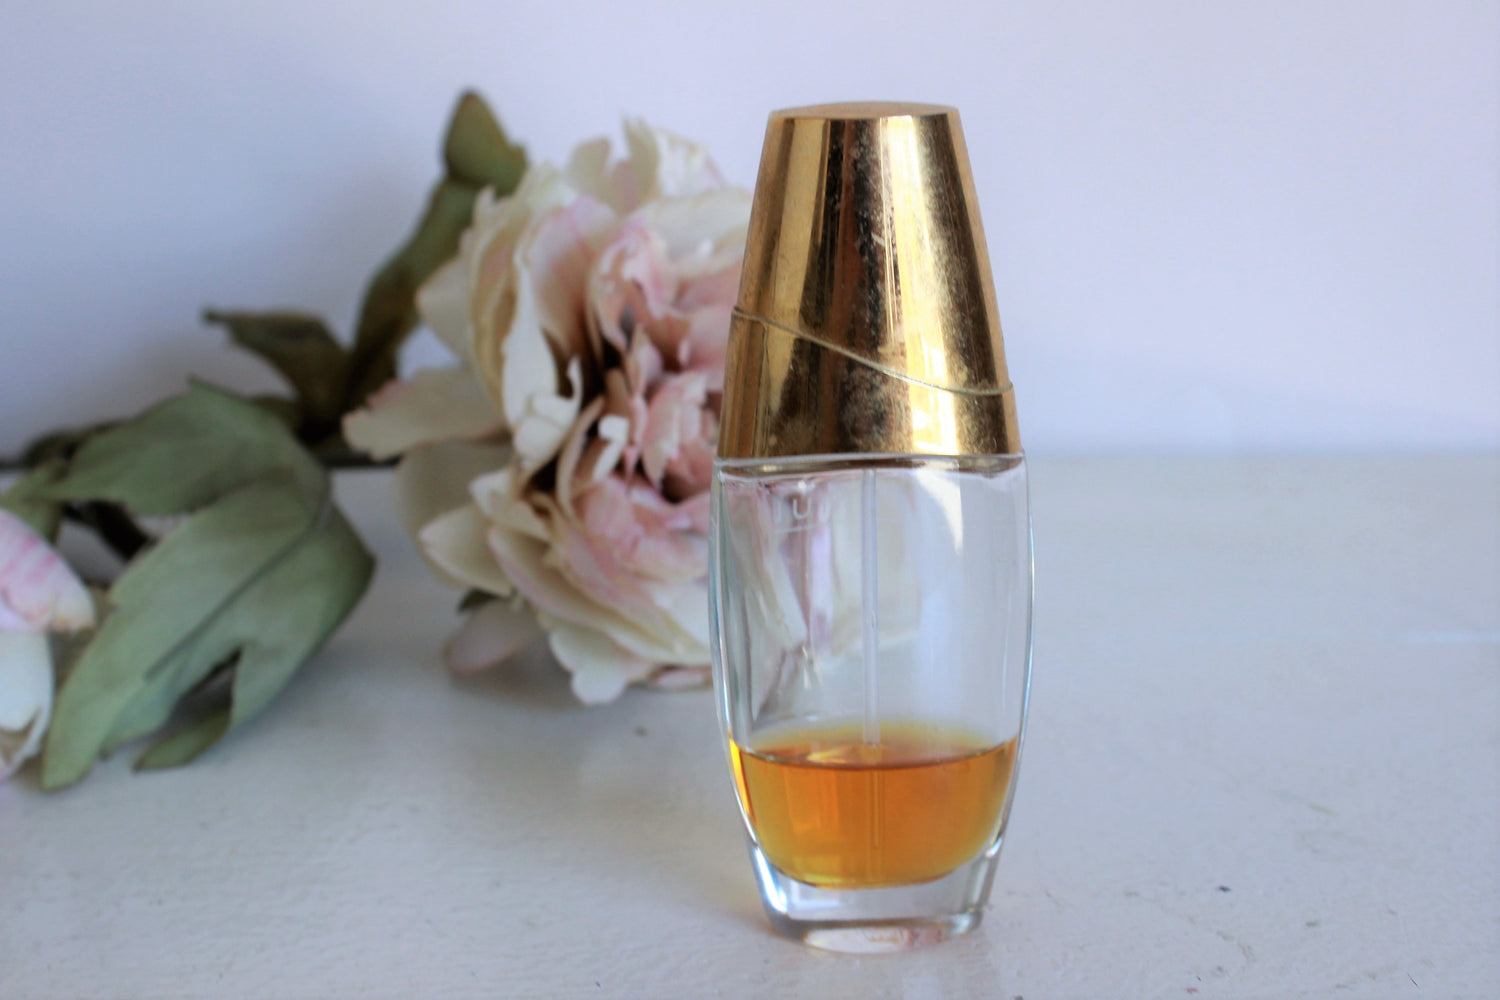 Vintage 1980s Estee Lauder Beautiful Perfume